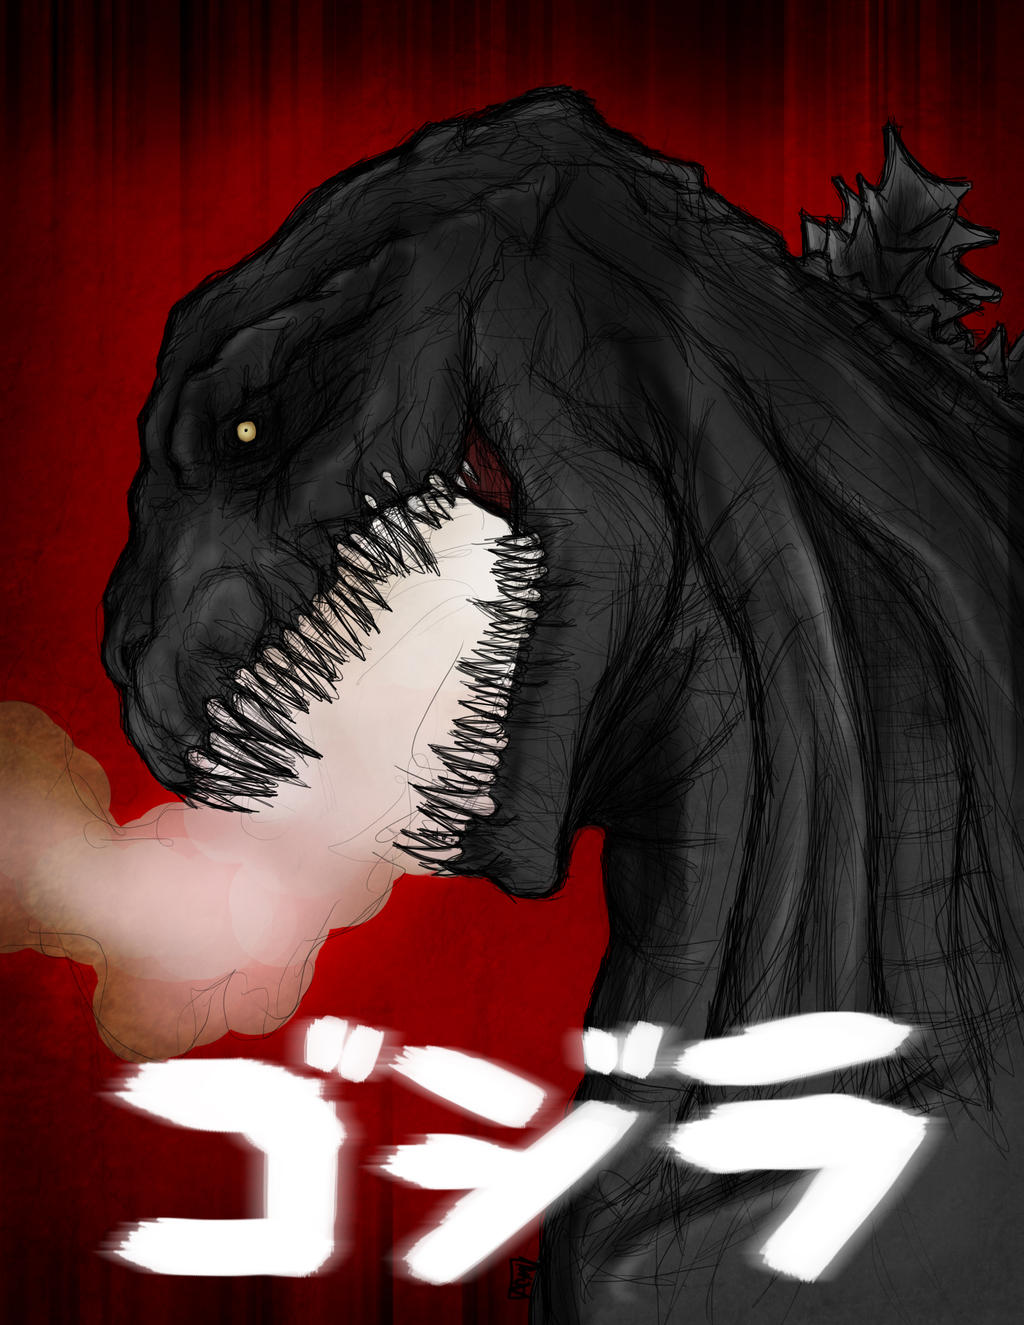 CGF (Crazy Godzilla Fan)